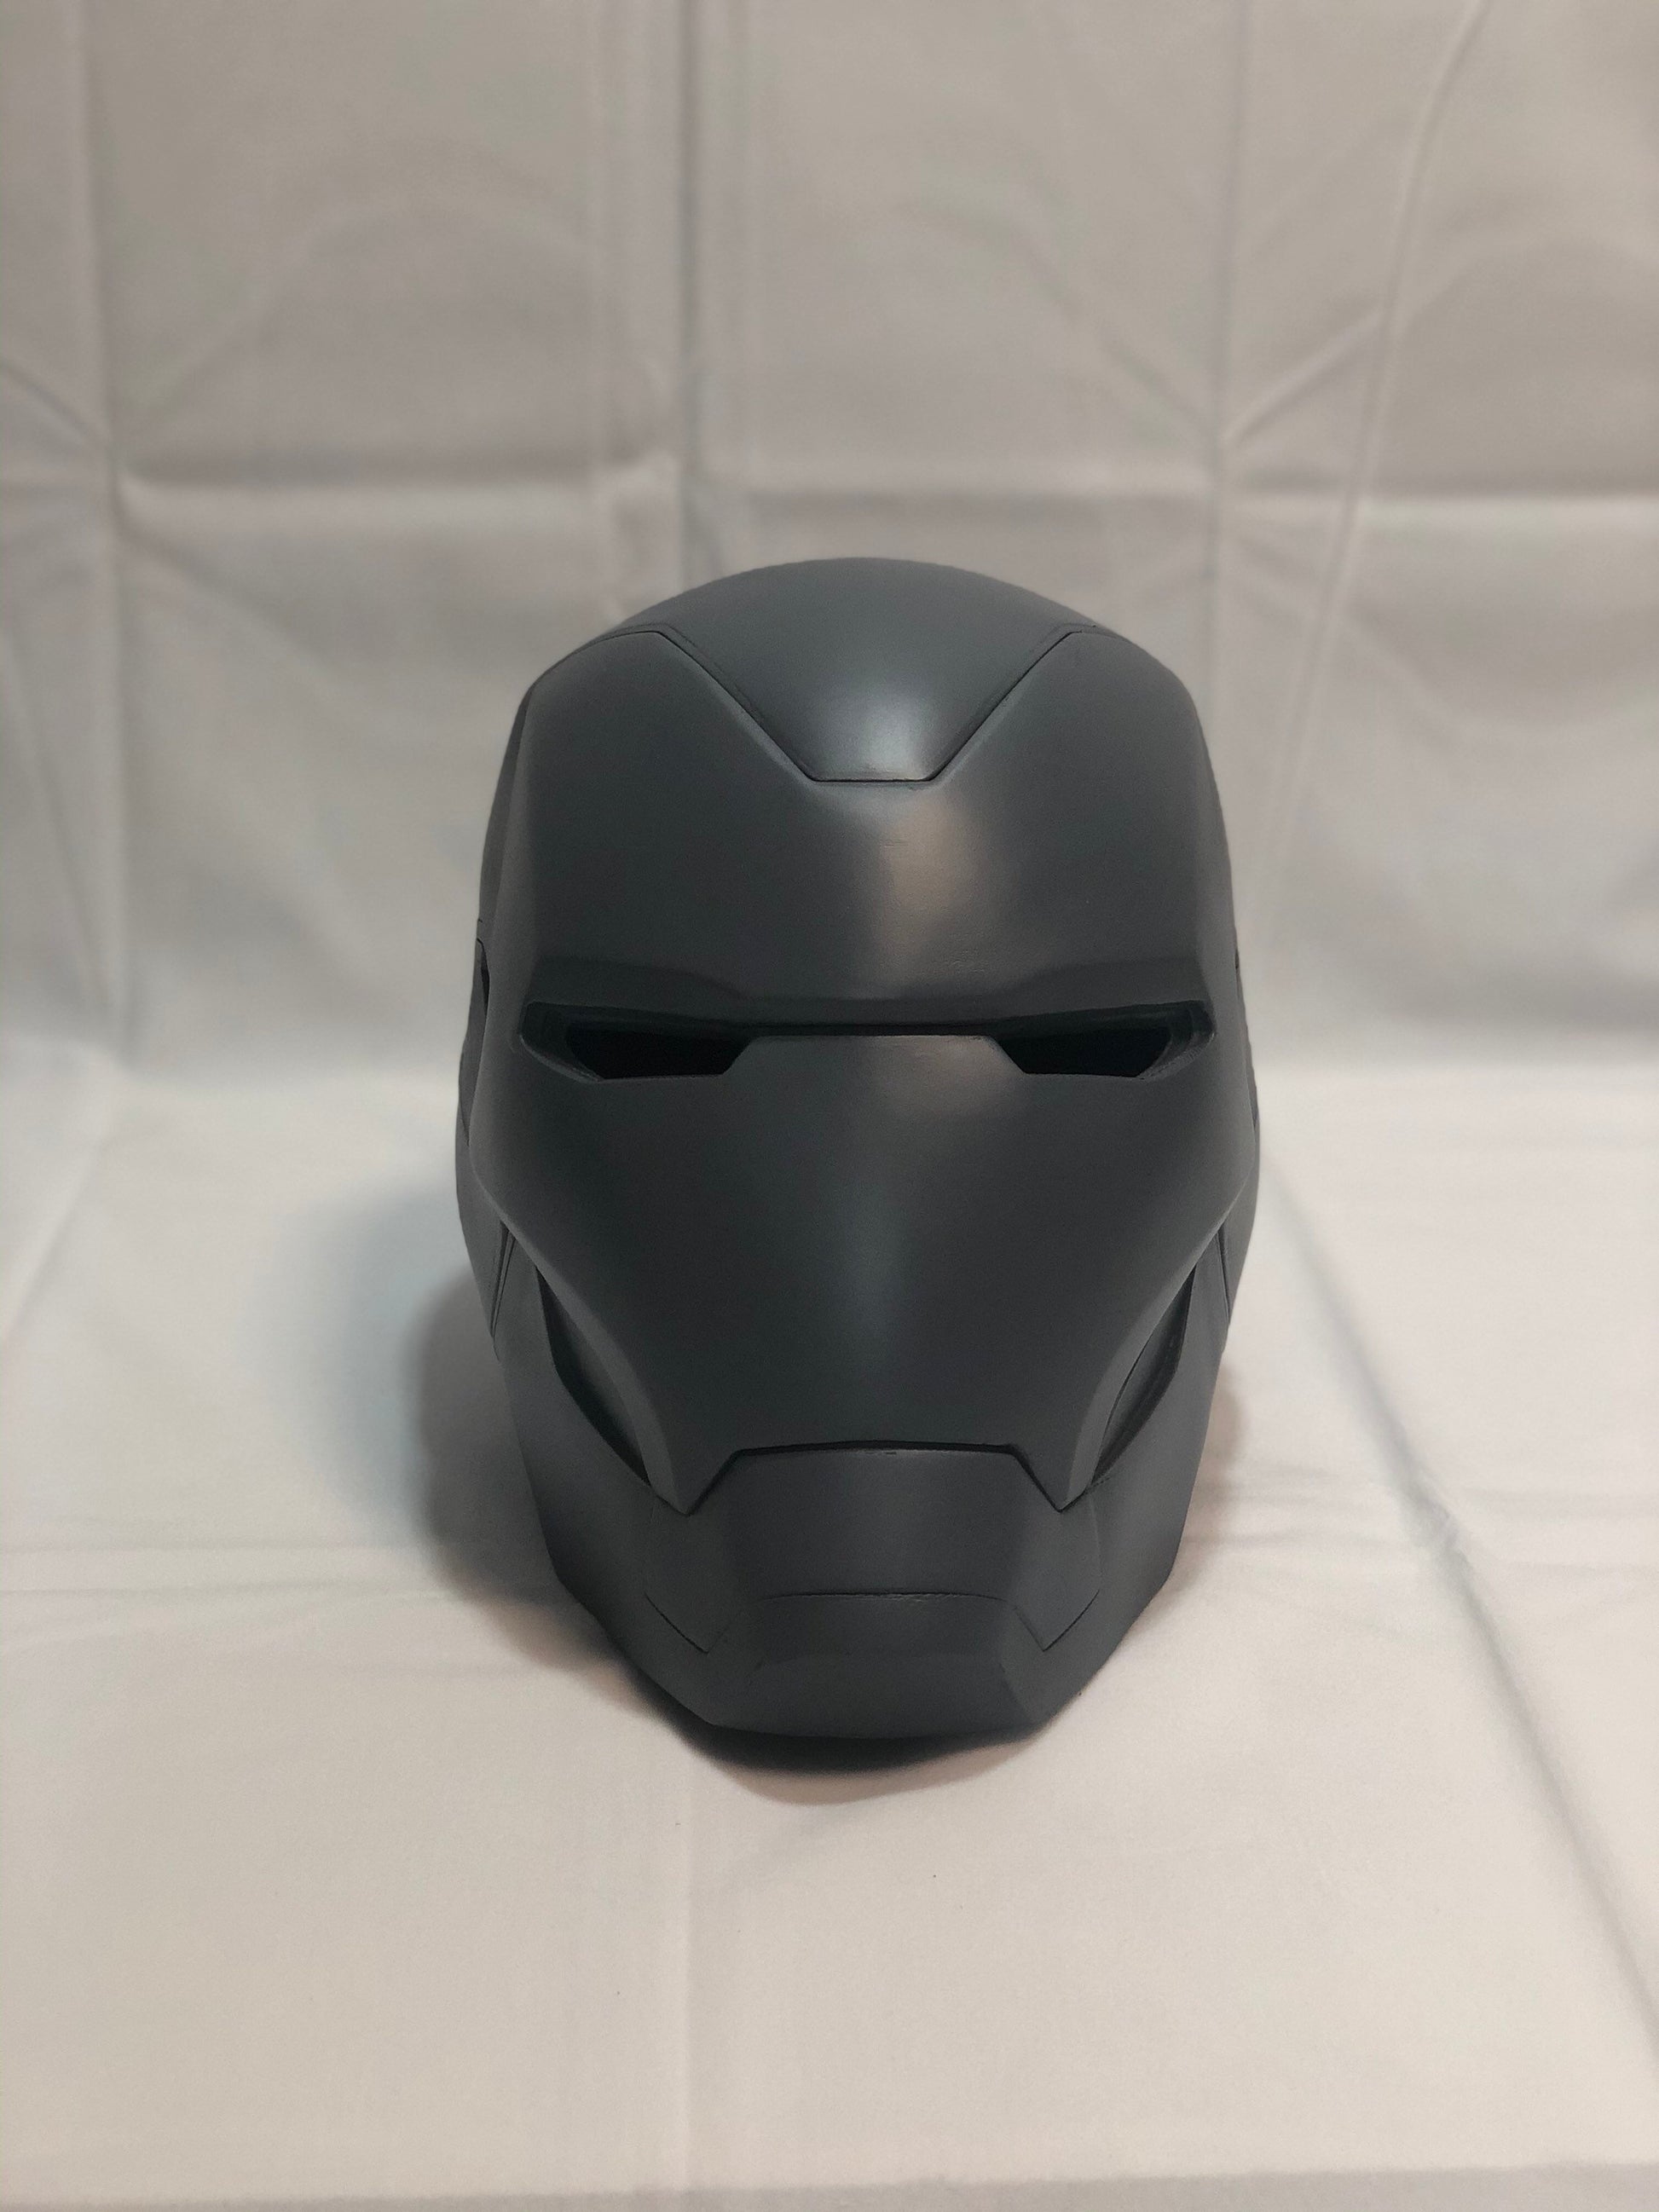 Iron man MK85 helmet (with interior detail!!)